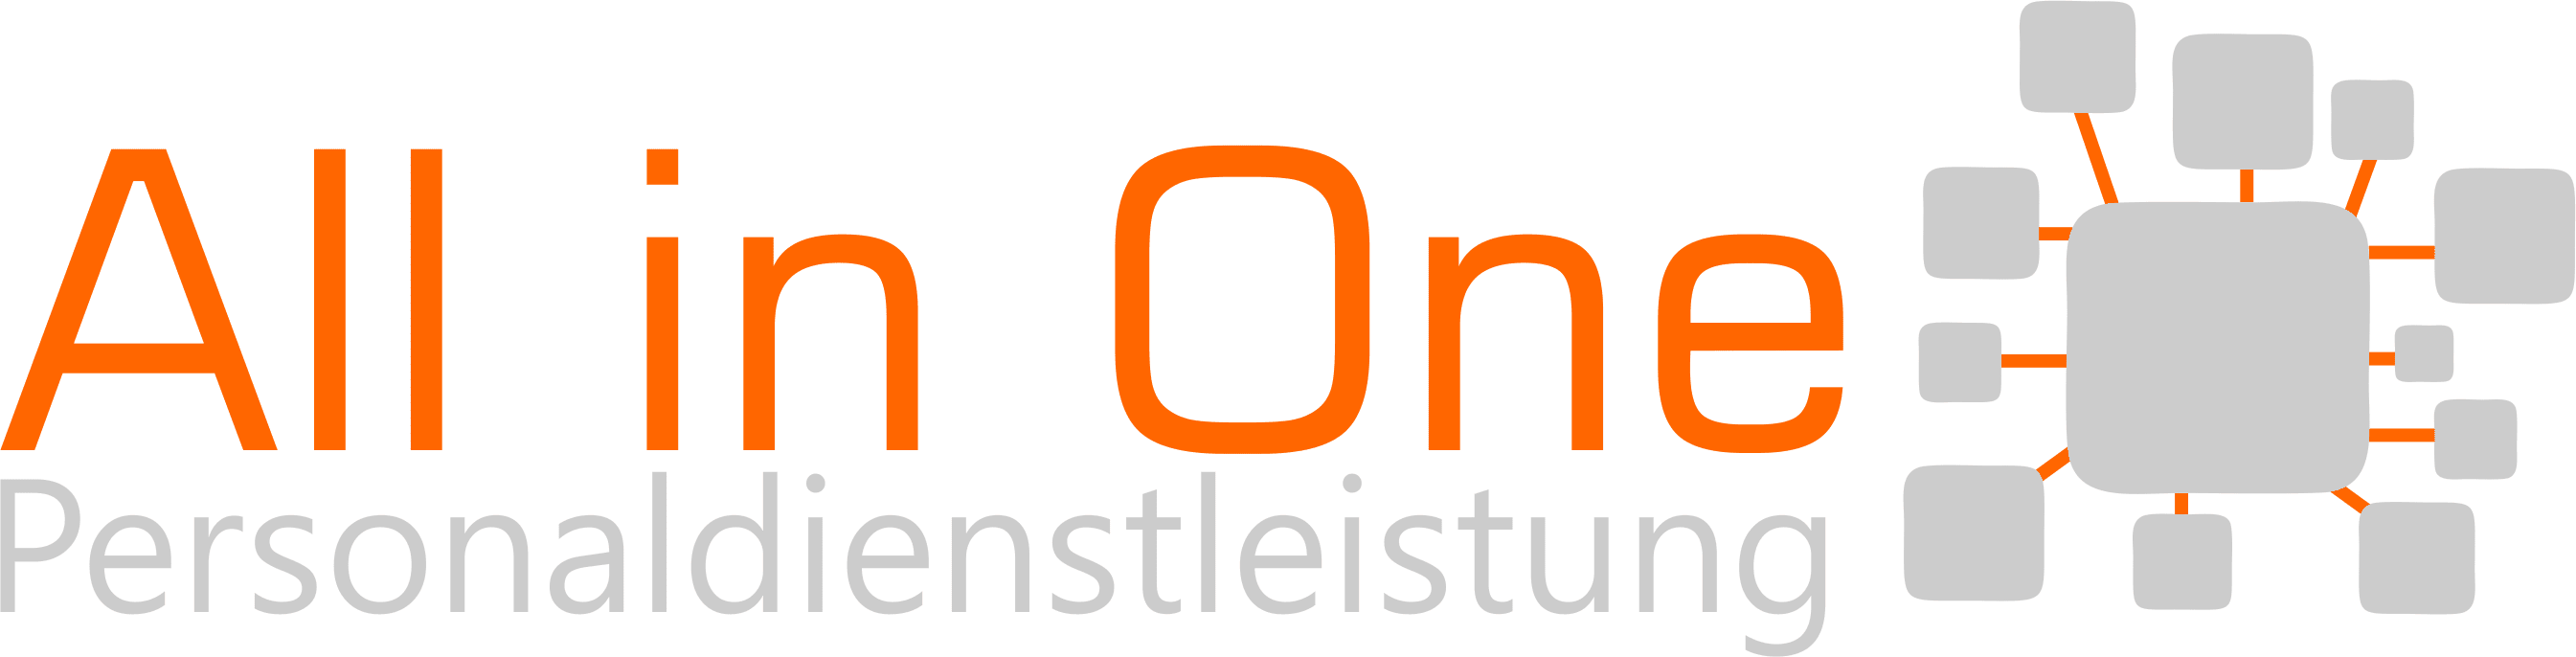 All in One Personaldienstleistung GmbH - Logo